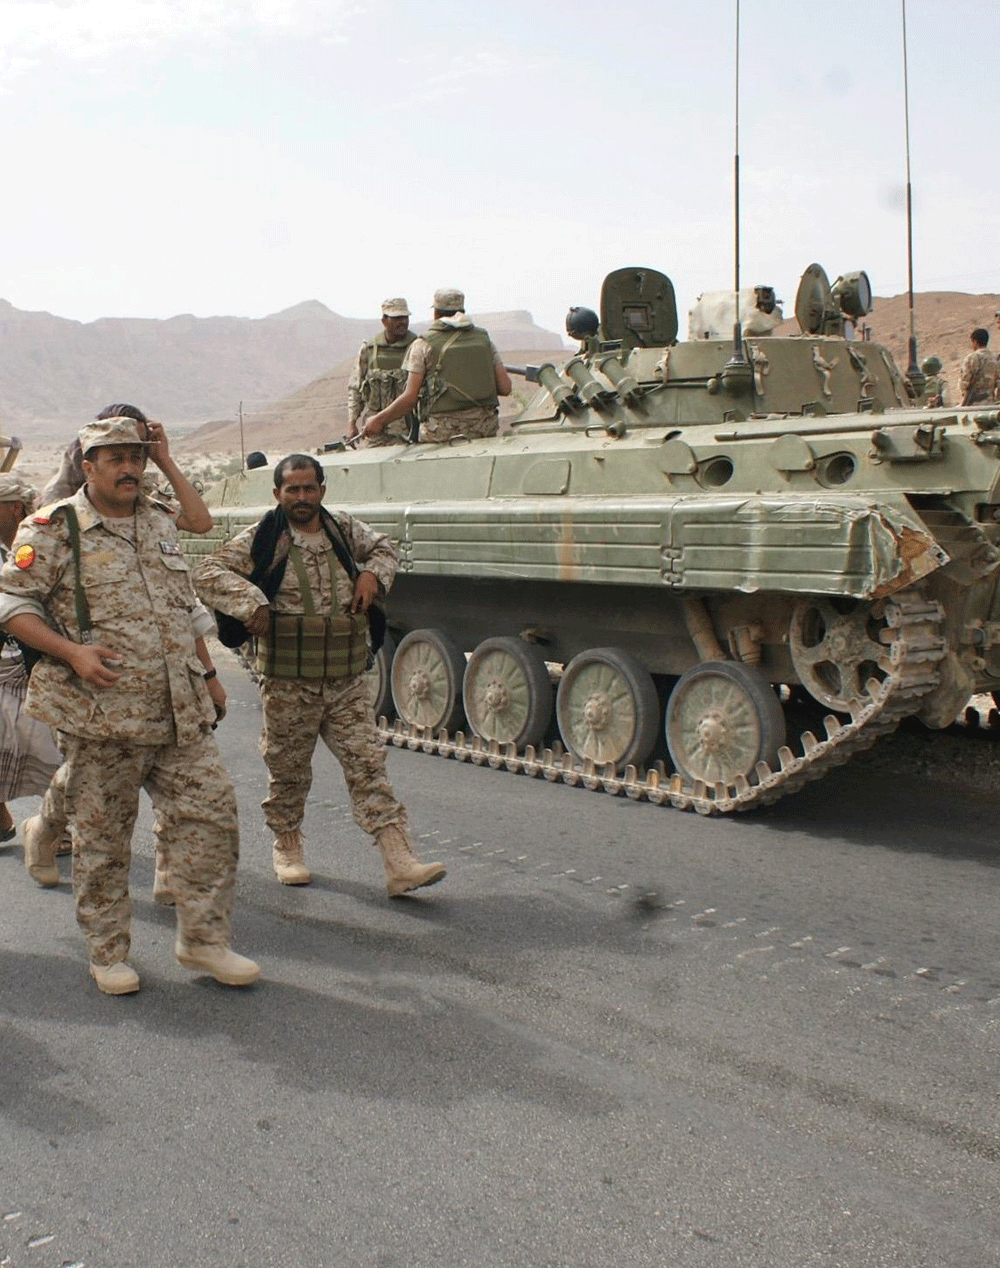 الجيش اليمني يواصل انتصاراته في كل الجبهات لدحر الانقلابيين وعودة الشرعية (رويترز)